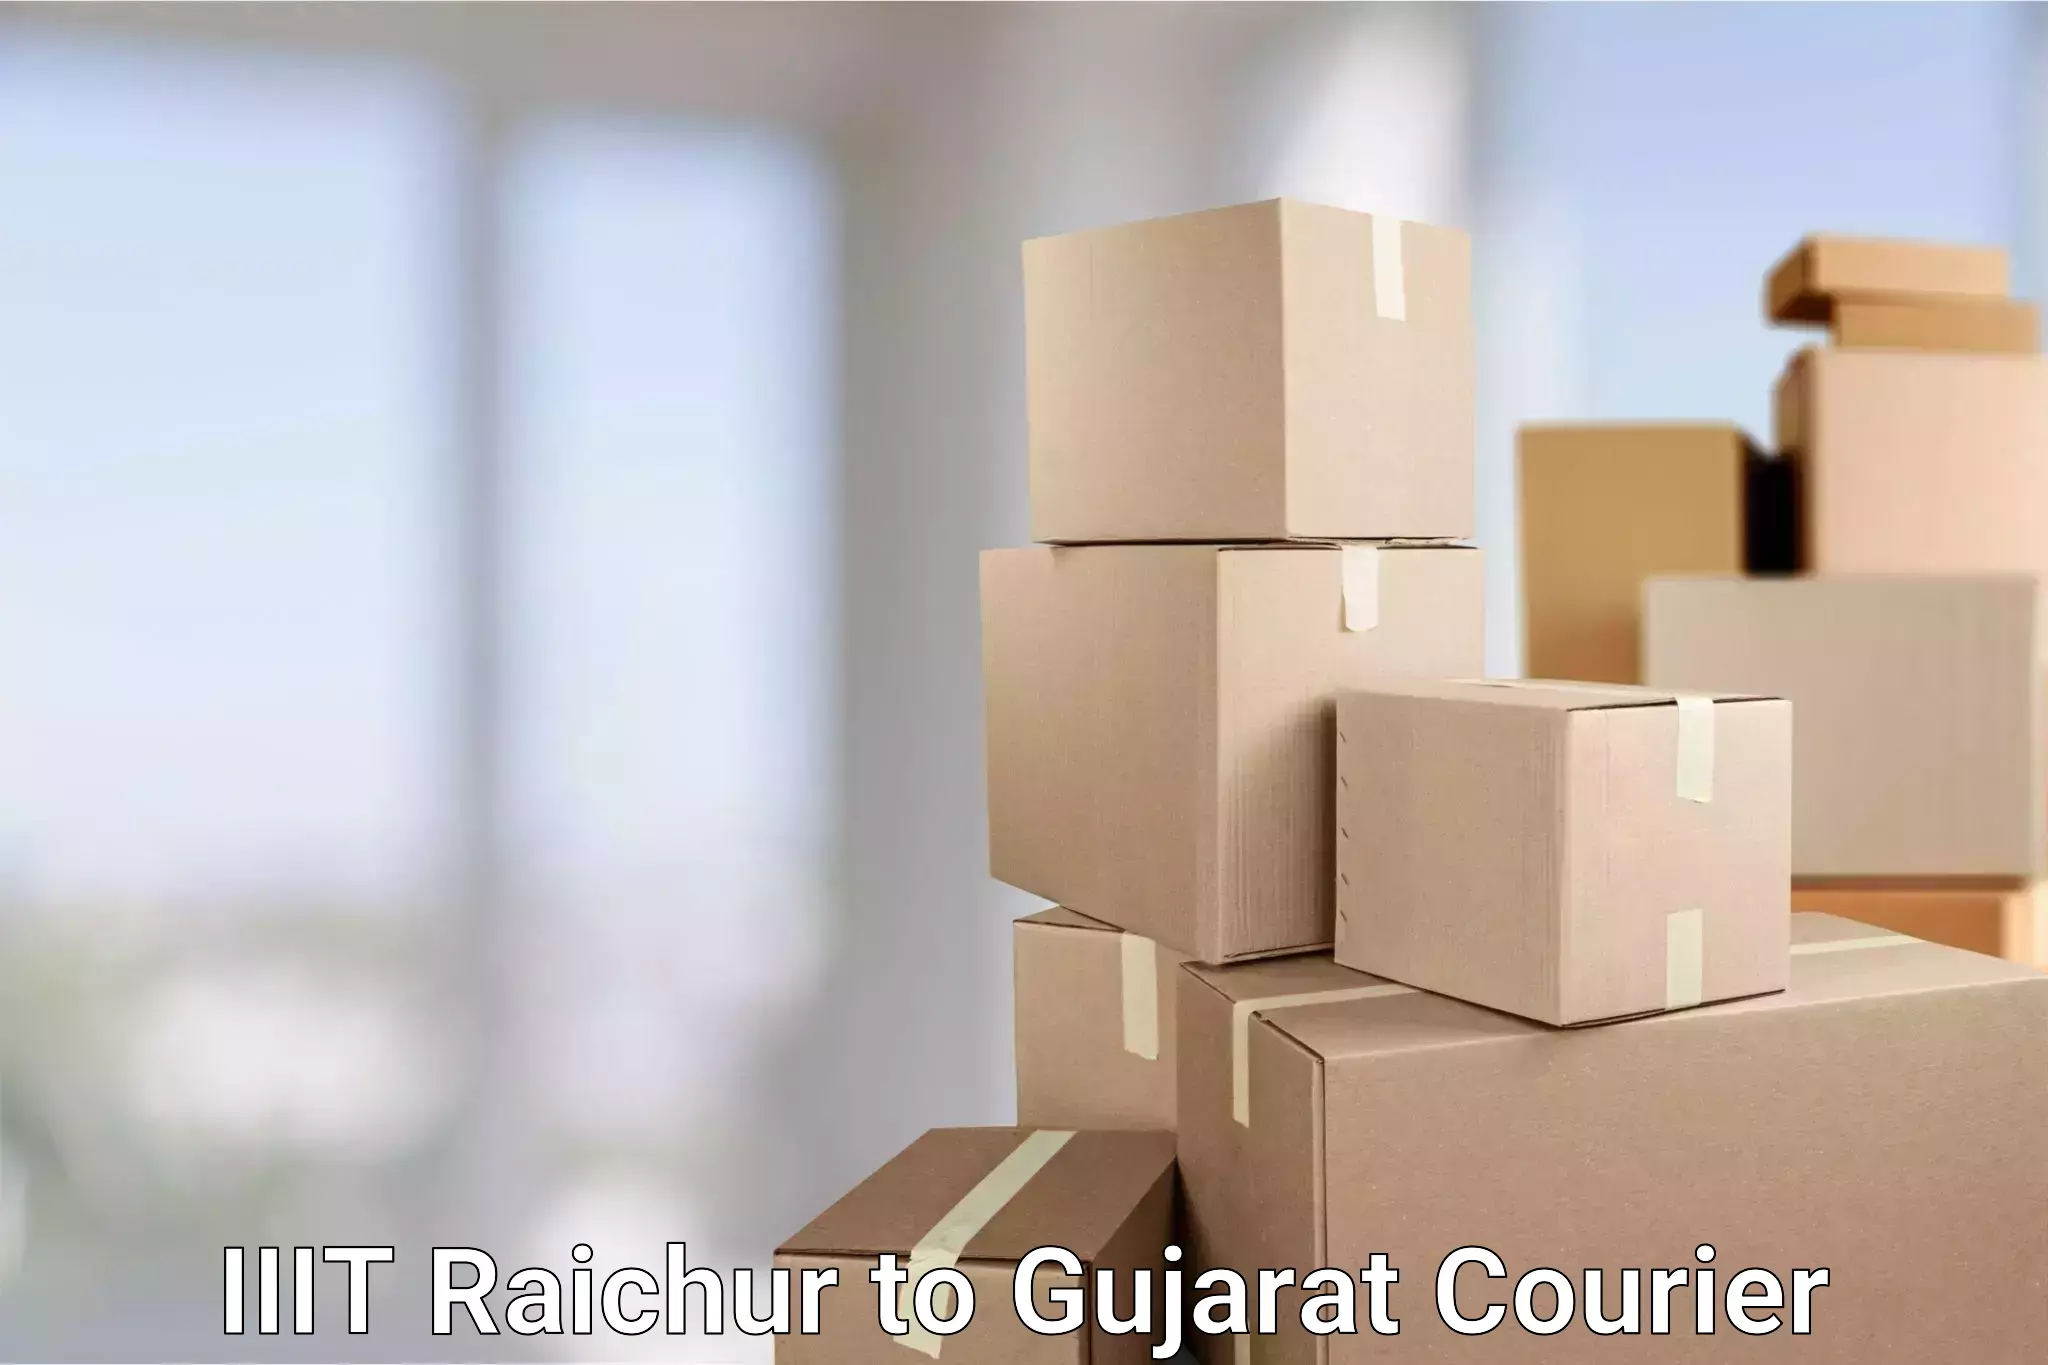 Flexible delivery scheduling IIIT Raichur to Gujarat